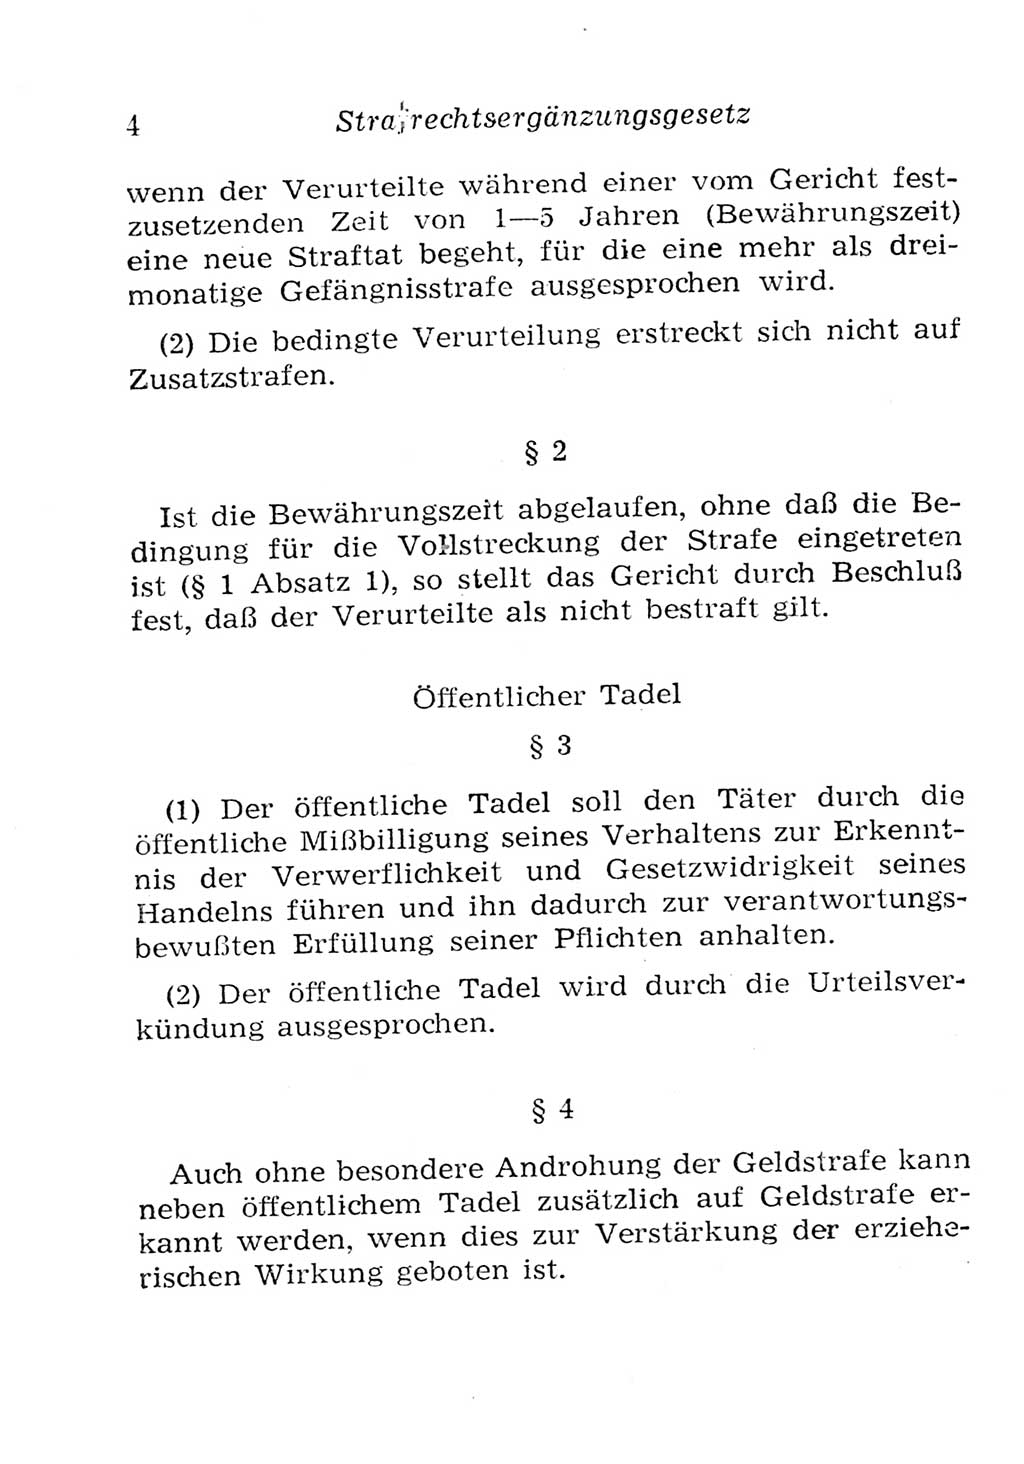 Strafgesetzbuch (StGB) und andere Strafgesetze [Deutsche Demokratische Republik (DDR)] 1957, Seite 4 (StGB Strafges. DDR 1957, S. 4)